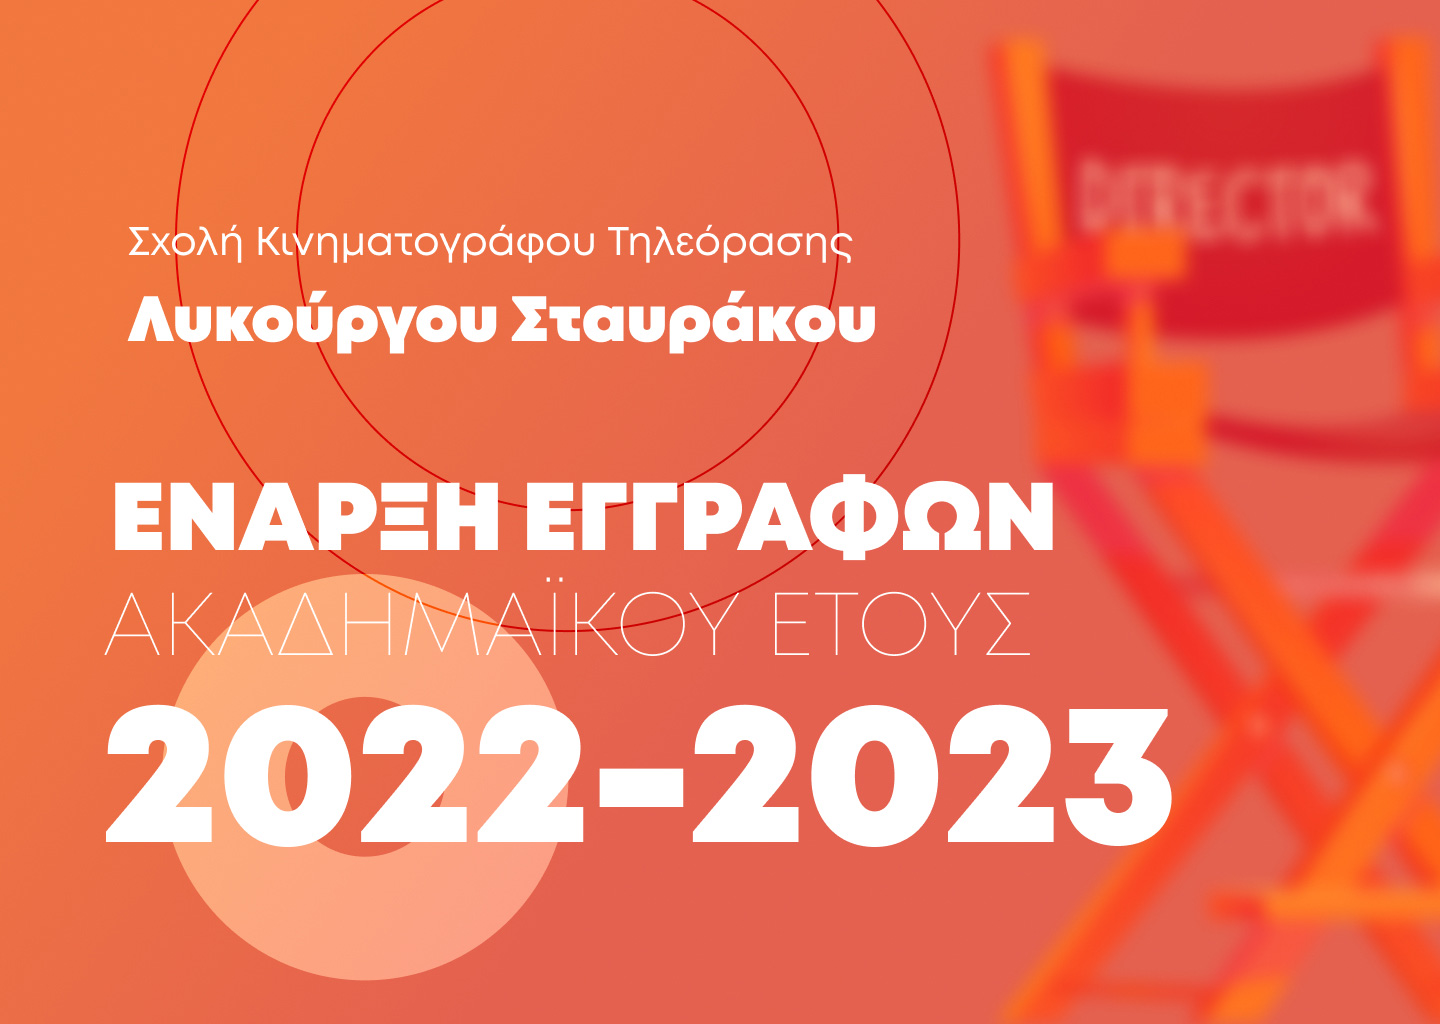 ΕΝΑΡΞΗ ΕΓΓΡΑΦΩΝ ΑΚΑΔΗΜΑΪΚΟΥ ΕΤΟΥΣ 2022-2023